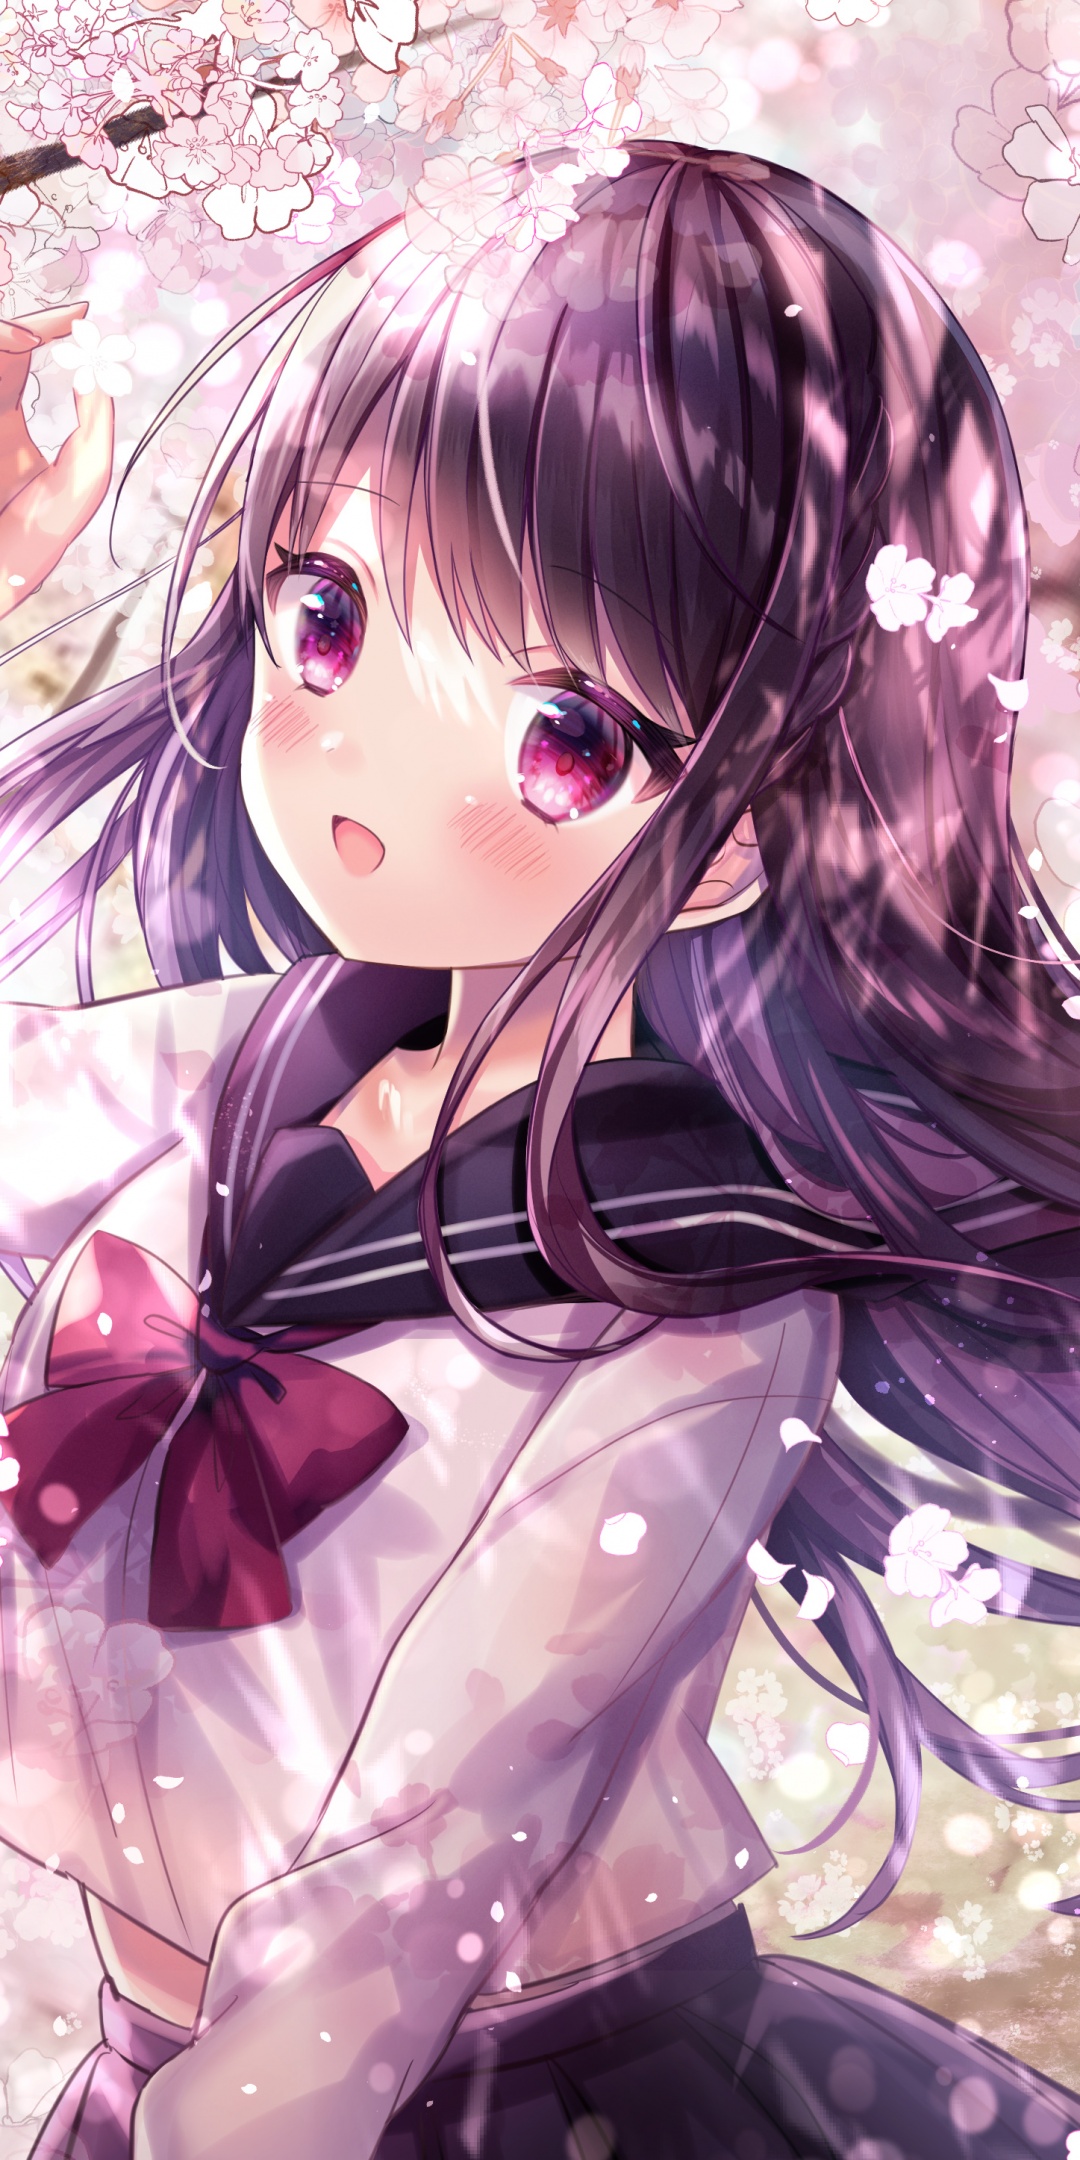 Anime girl 4K Wallpaper, Girly, Pink, Fantasy, Anime, #5055